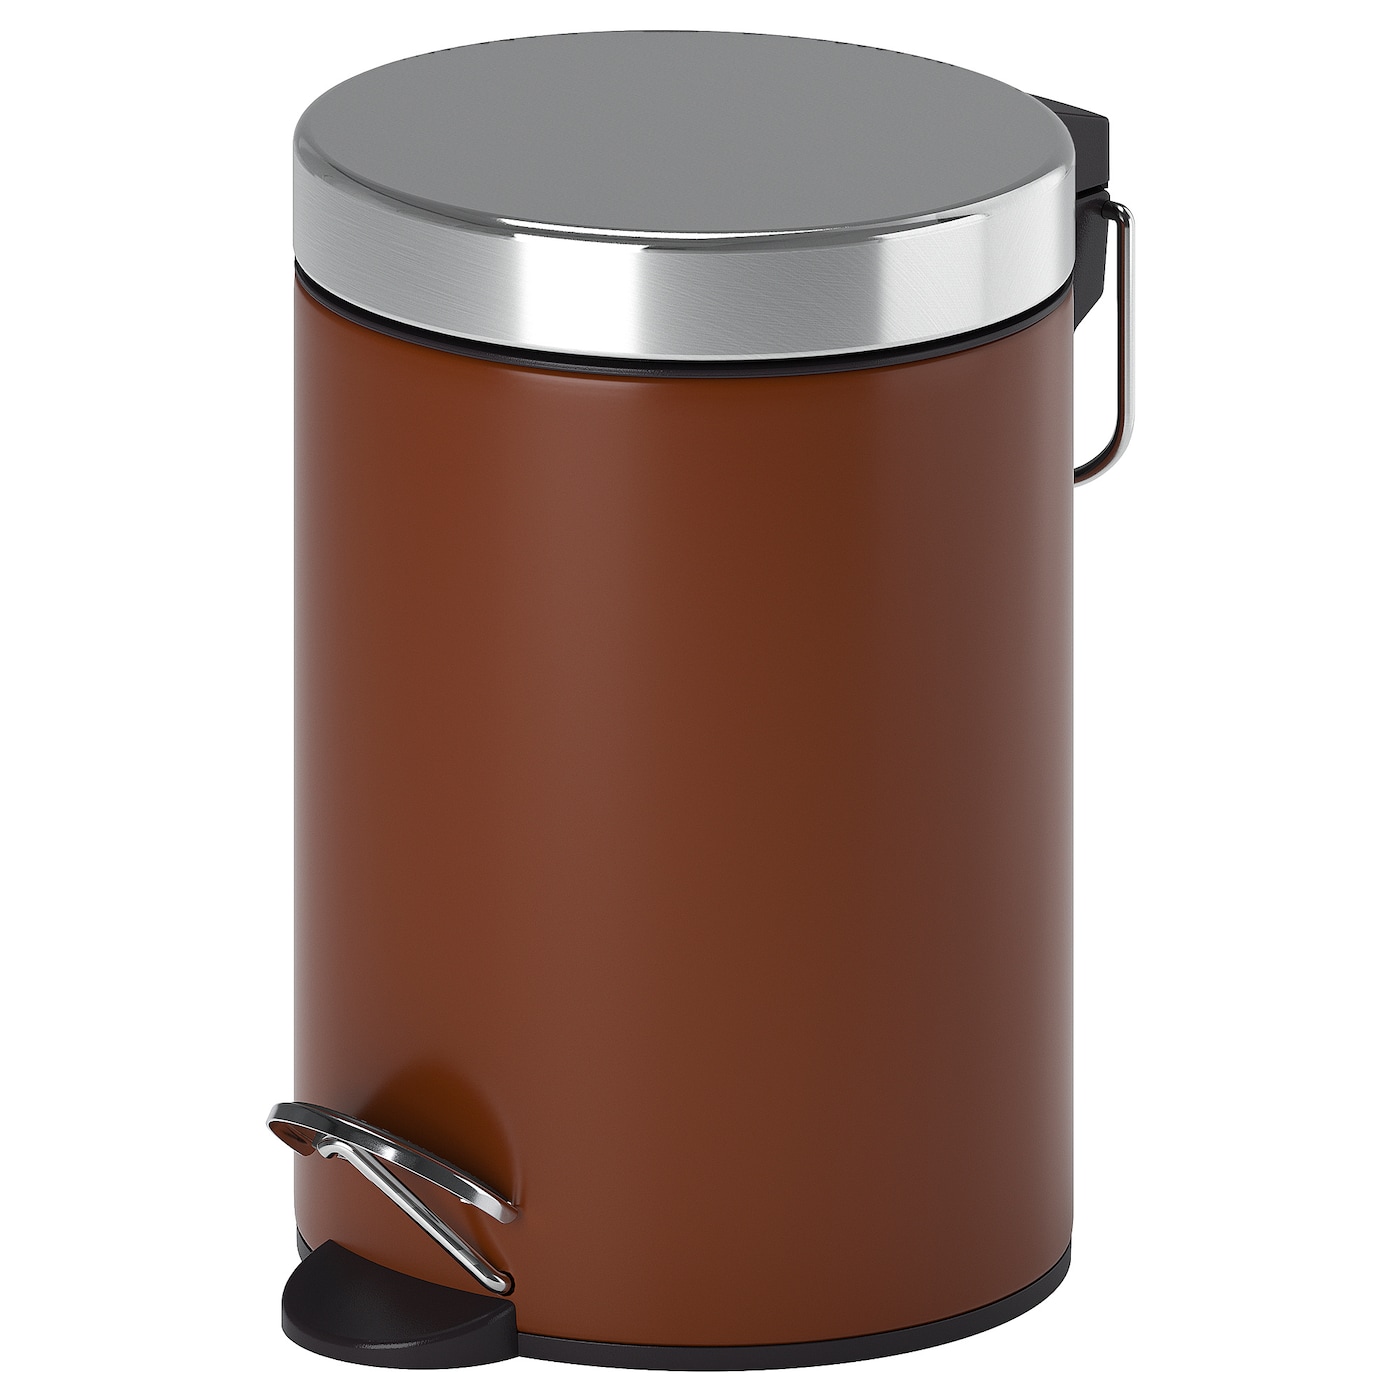 Корзина для мусора - IKEA EKOLN, 3л, коричневый/светло-коричневый, ЭКОЛН ИКЕА